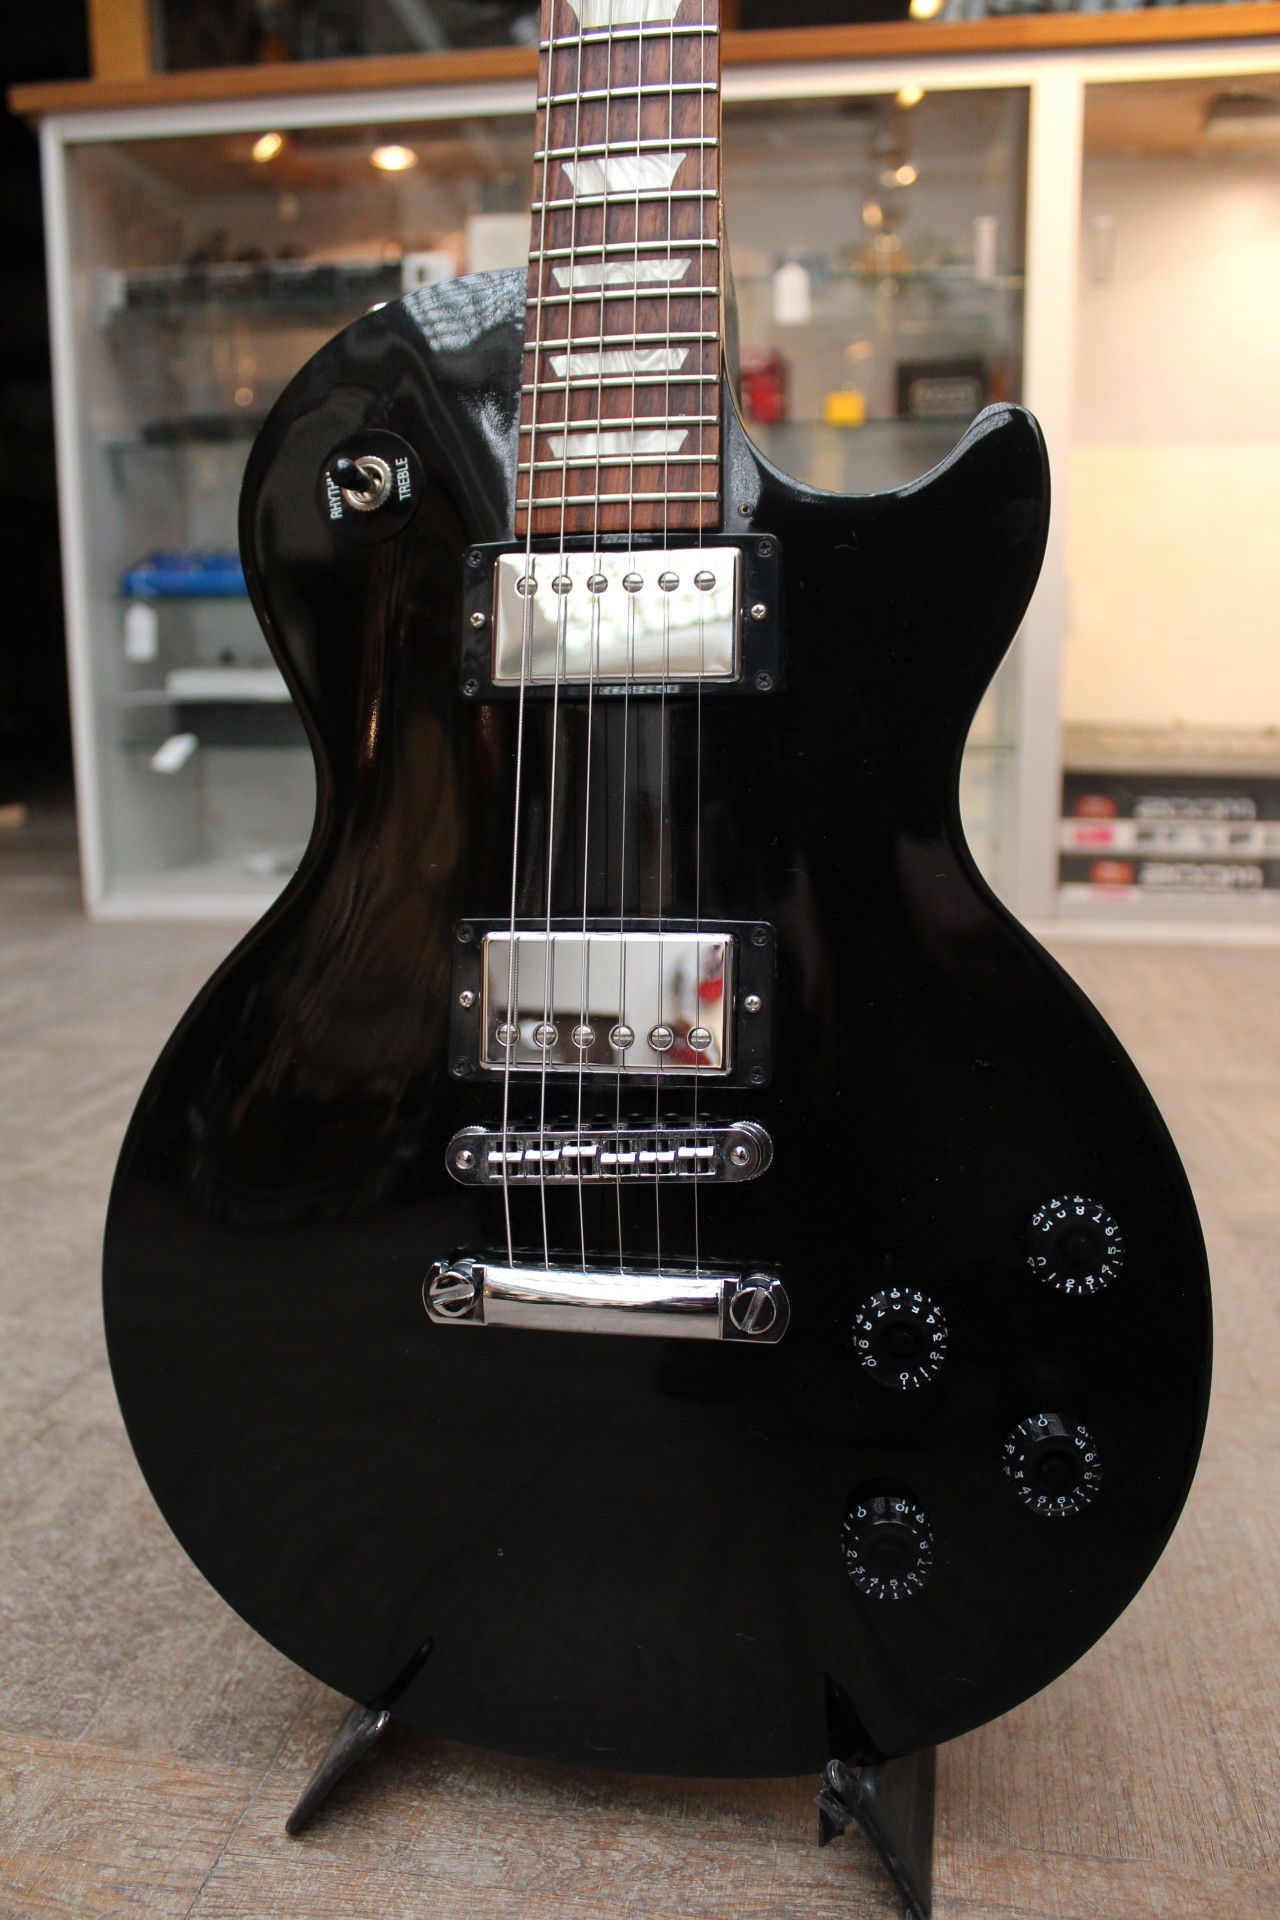 【NEW】No.081721 2010年 Gibson Les Paul Studio フェイデッドブラウンフルメンテ済み ギブソン